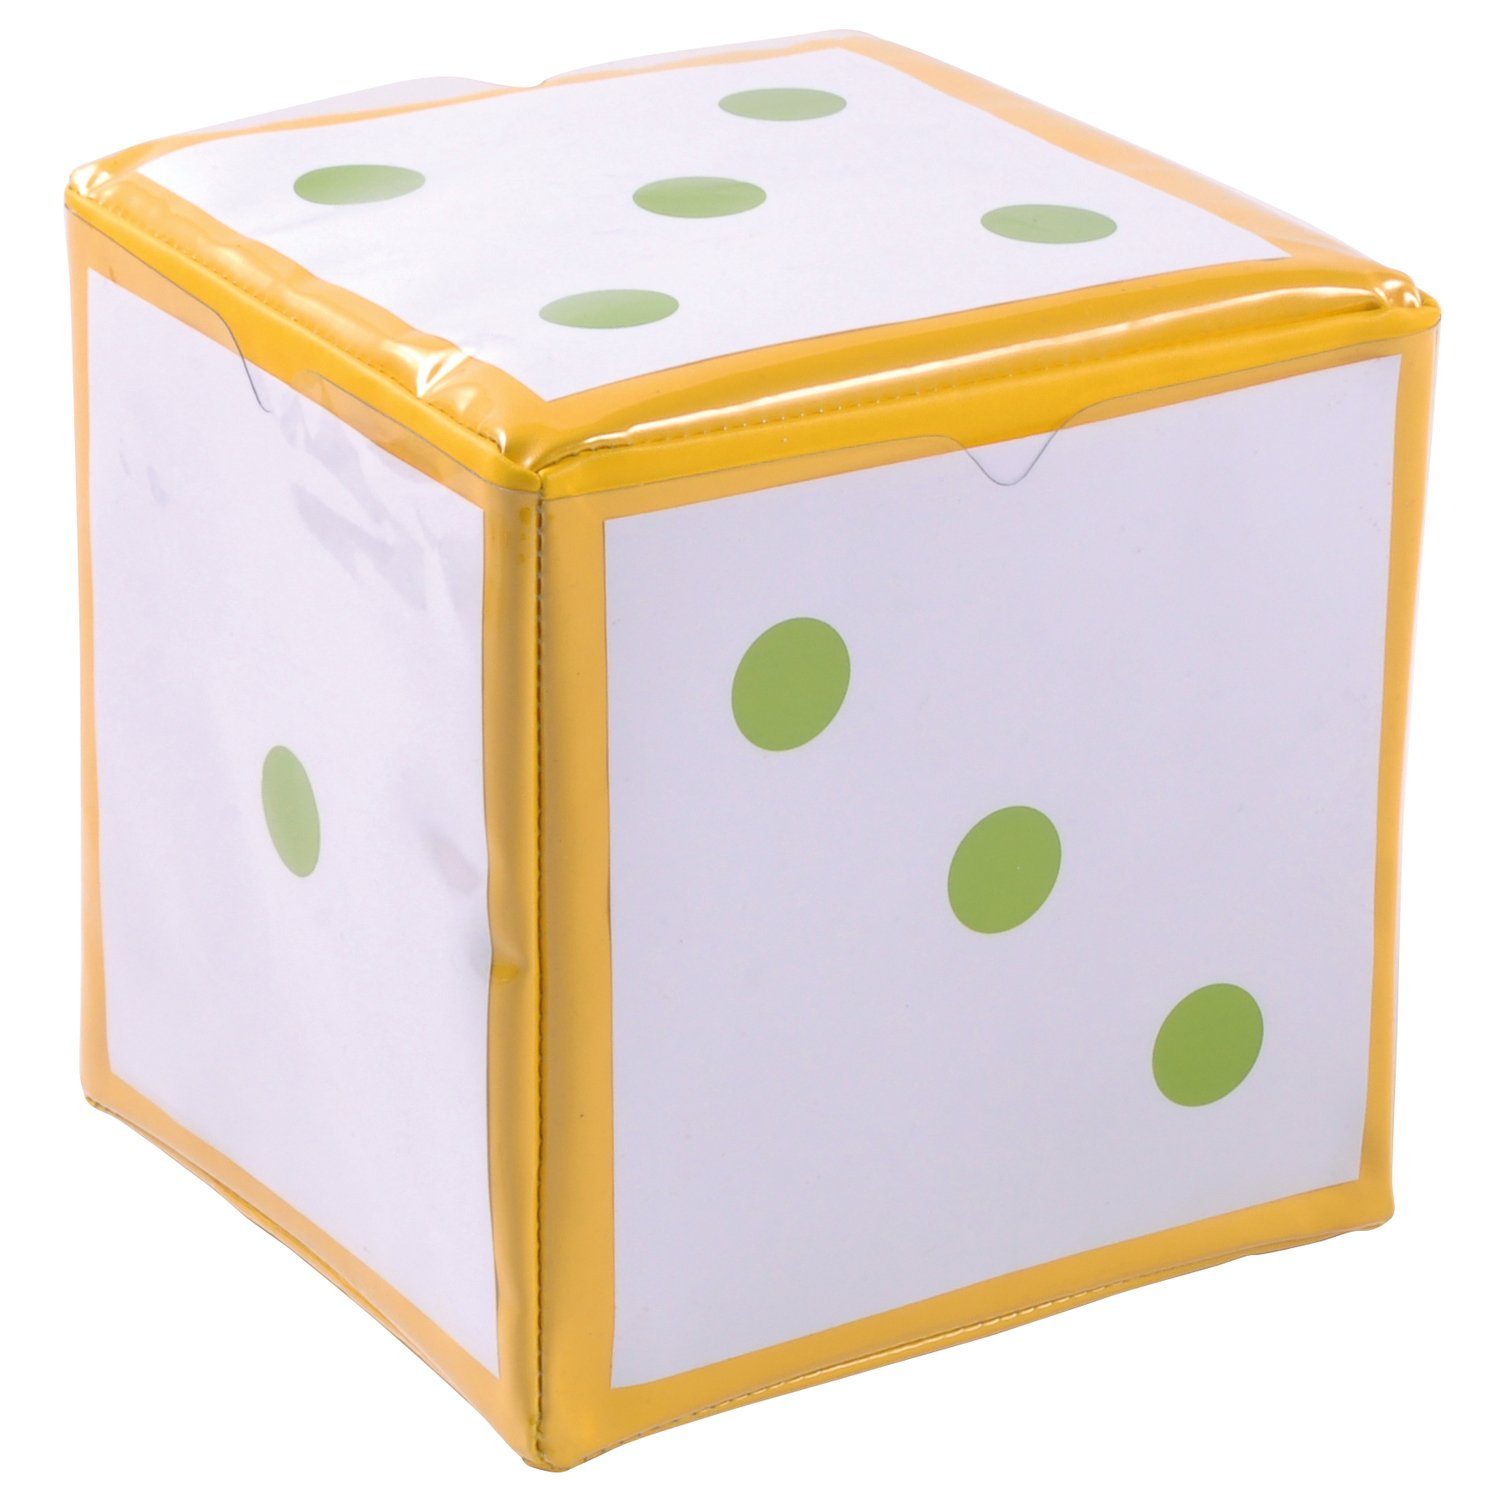 EDUPLAY Spiel, Schaumstoff-Würfel mit Taschen, 15,5 x 15,5 cm Gelb